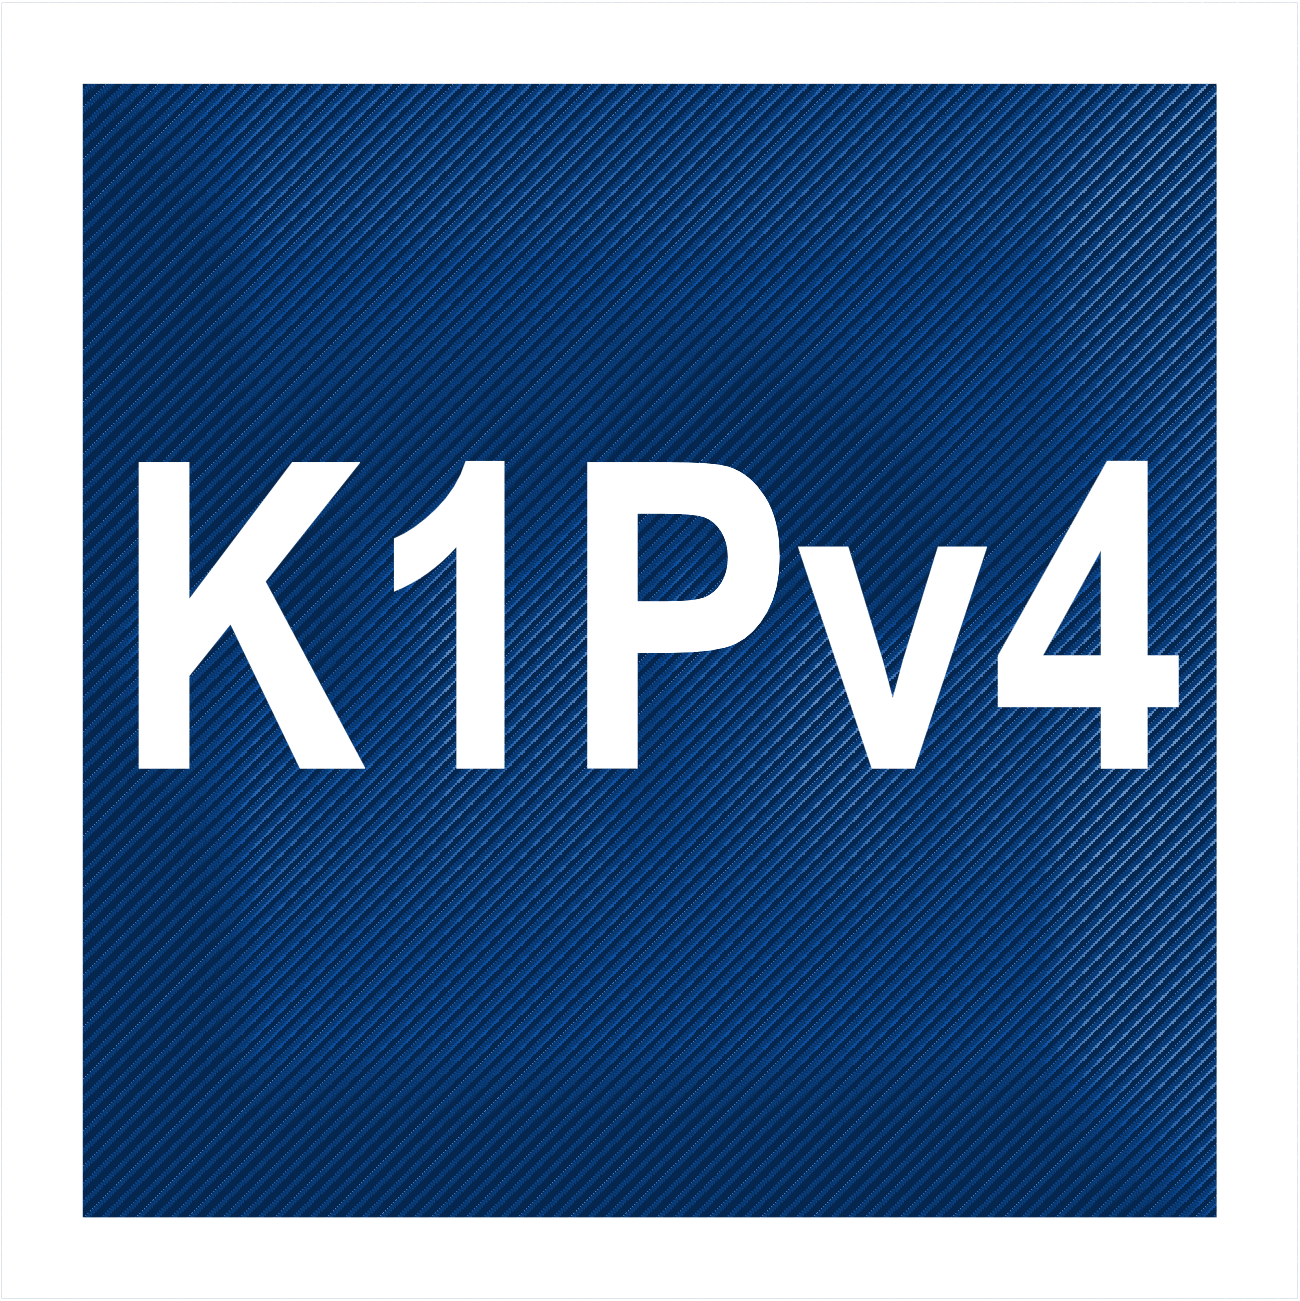 Sterownik K1pv4